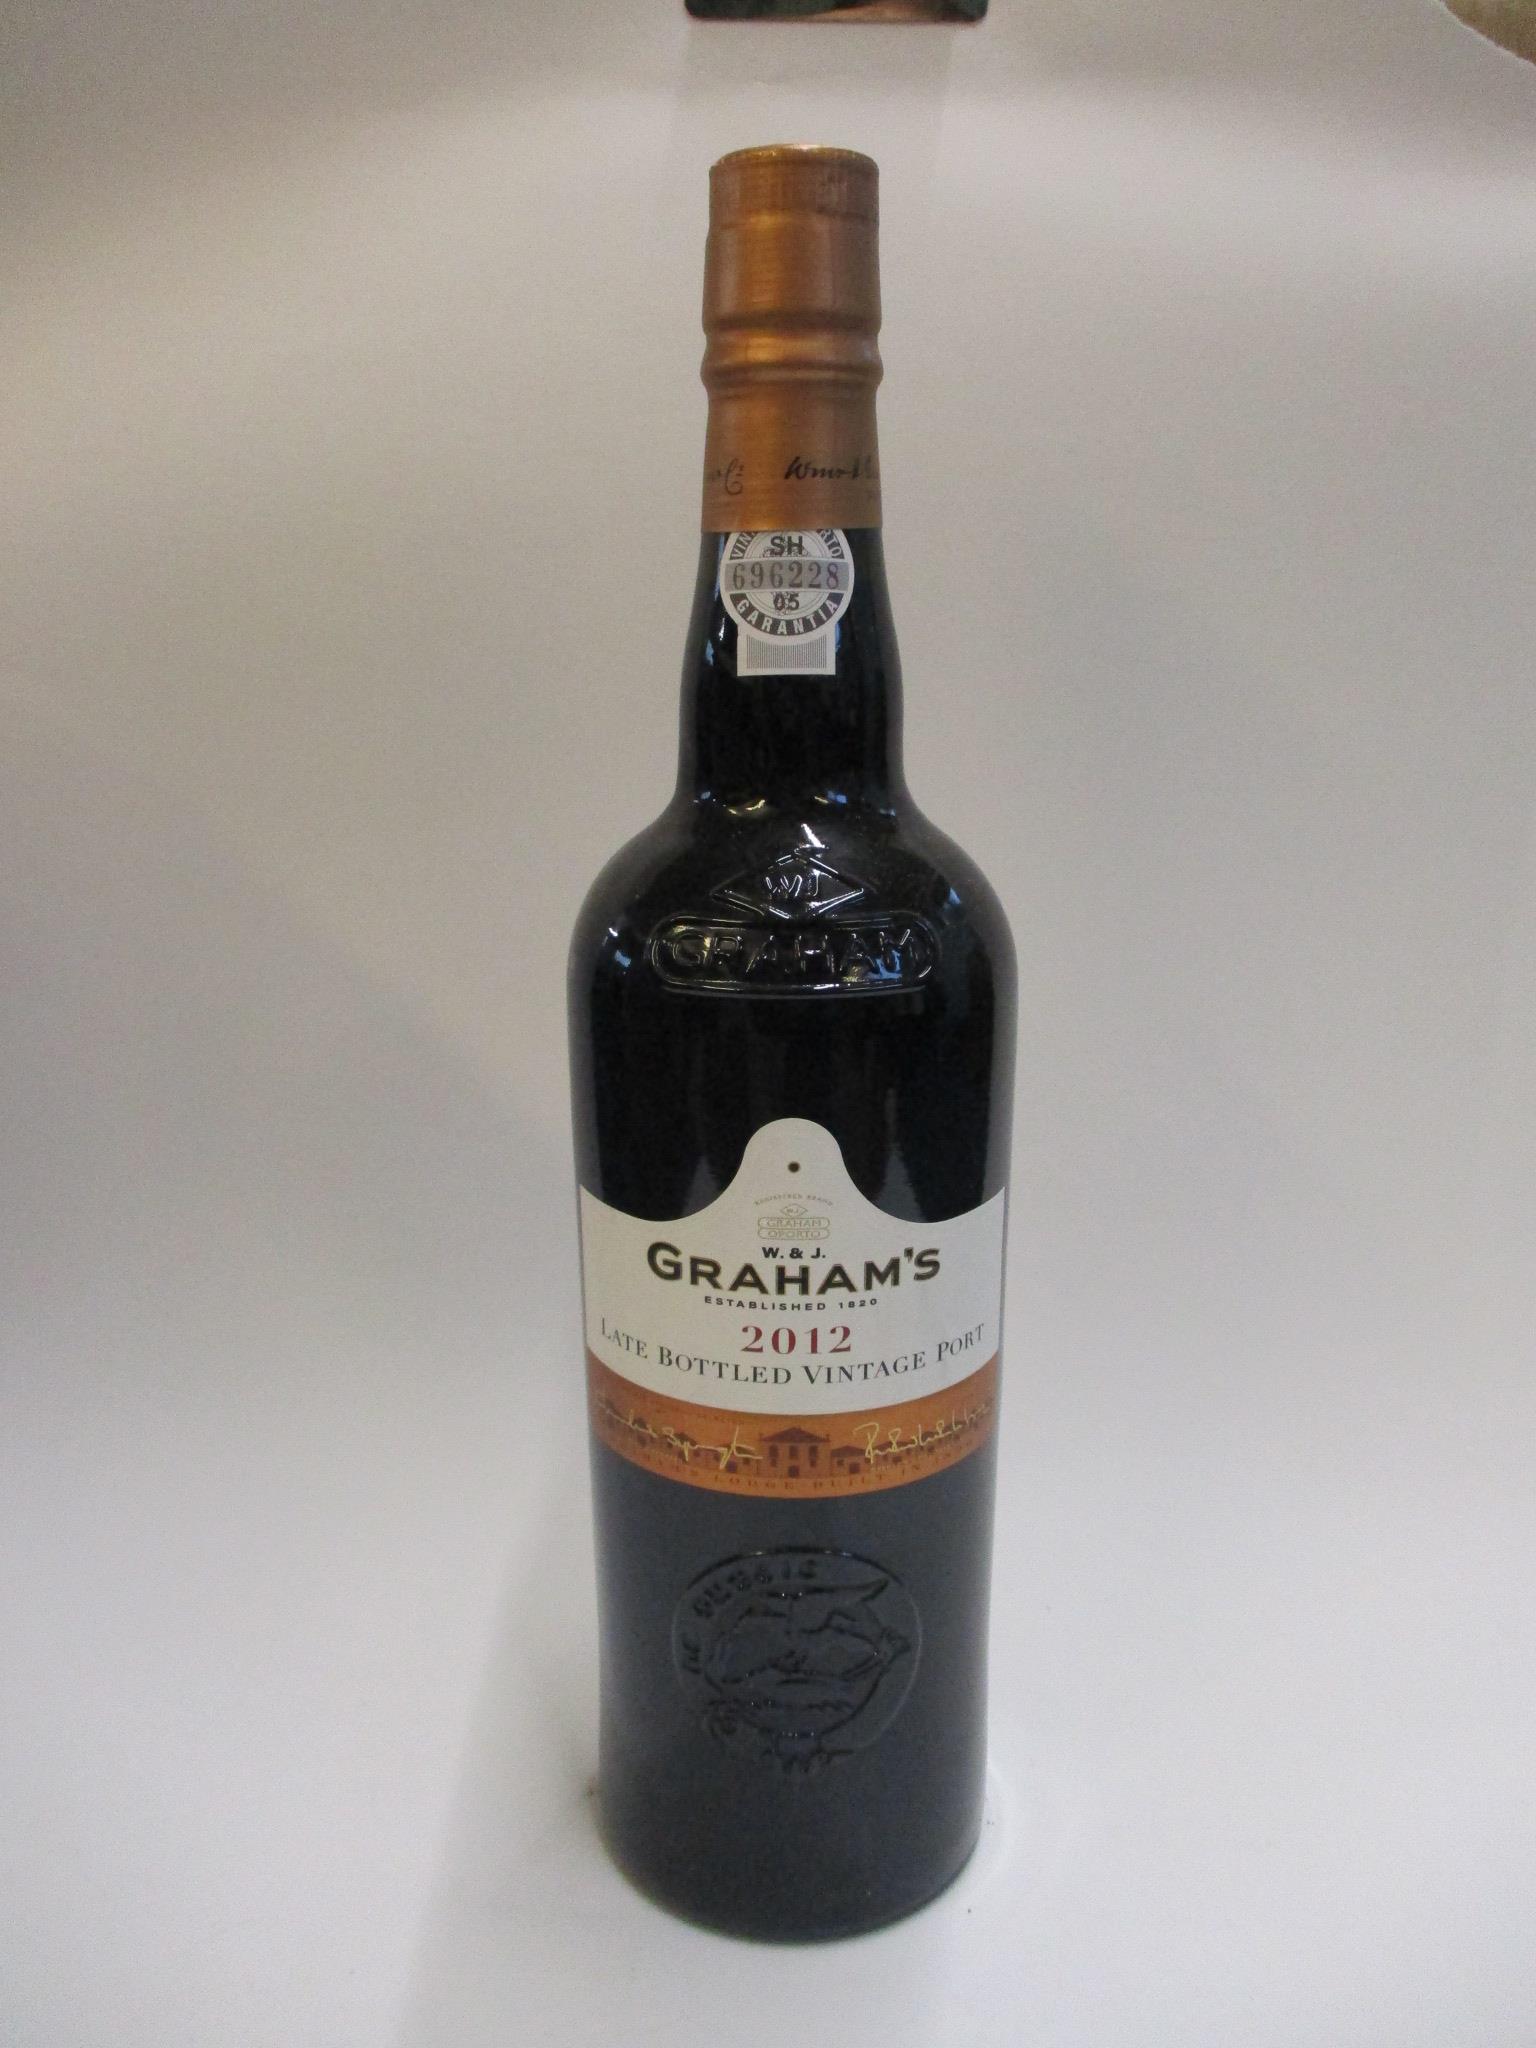 2012 Graham LB Vintage Port, 1 bottle